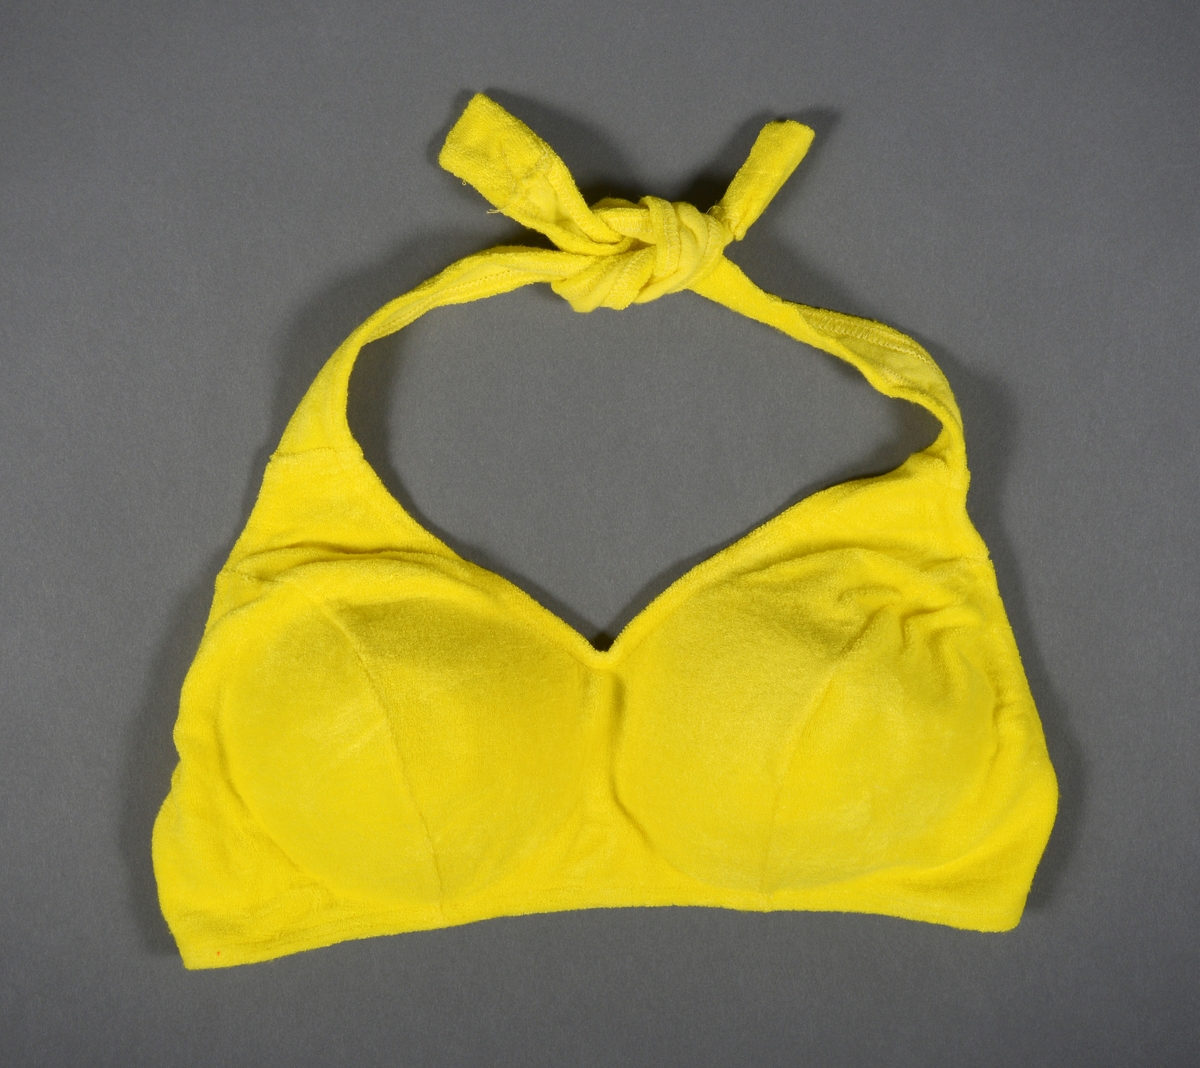 En gul bikinioverdel med halterneck (stroppene knytes i nakken). Den er laget av et flossete gult bomullsstoff. Cupen er polstret med et hvitt kunststoff. Midt bak er det en hekte av hvit plast som kan åpnes/lukkes. Bikinioverdelen er i størrelse 44/46.